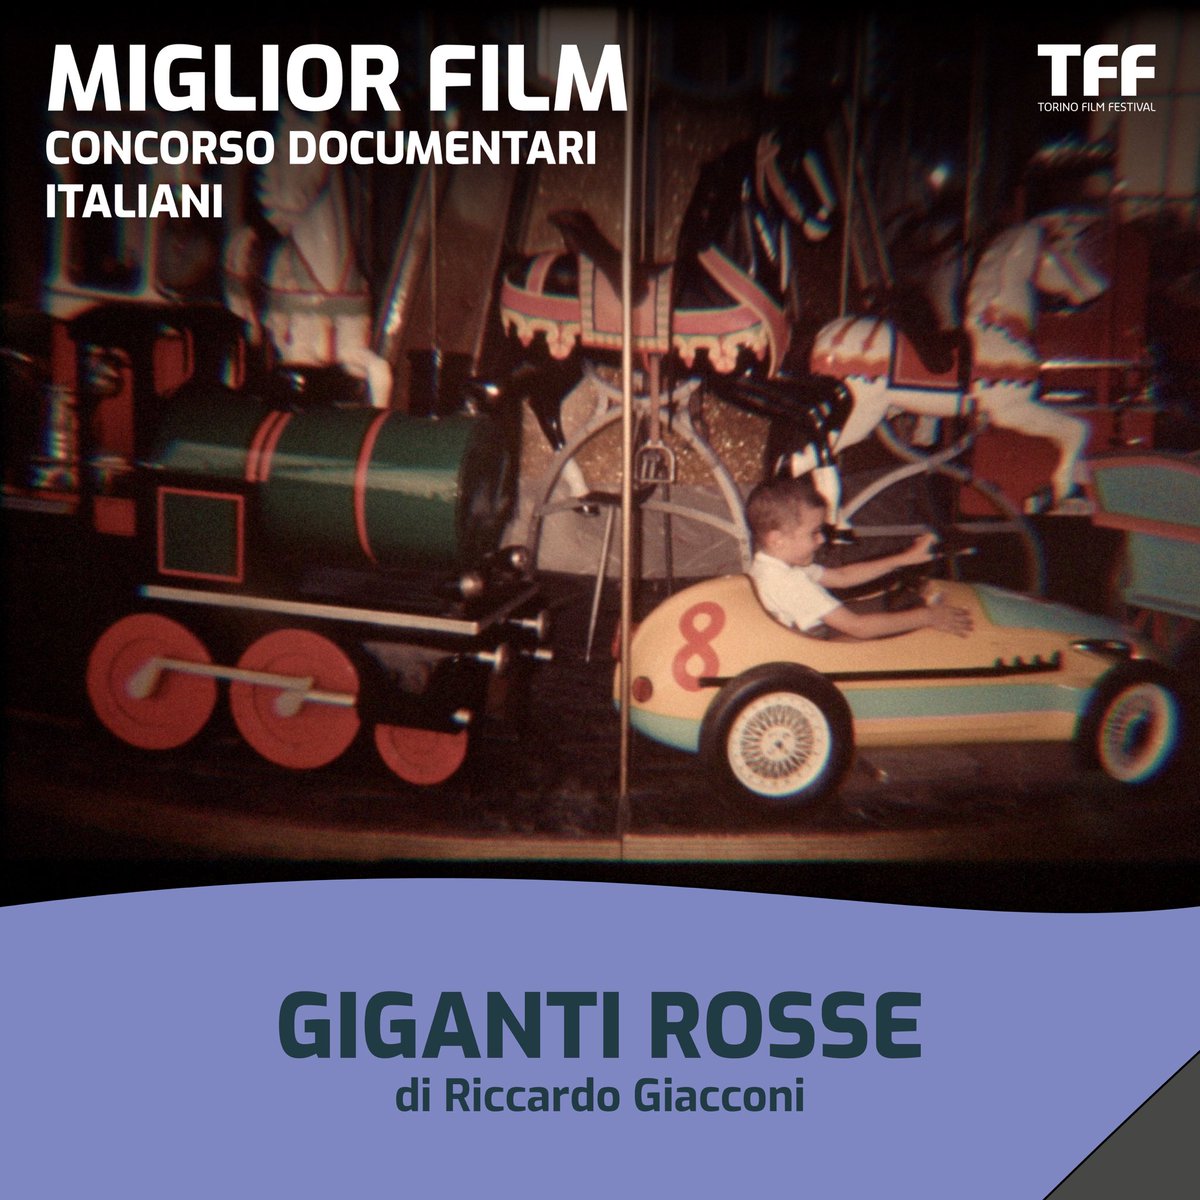 Il miglior documentario italiano è GIGANTI ROSSE Riccardo Giacconi.